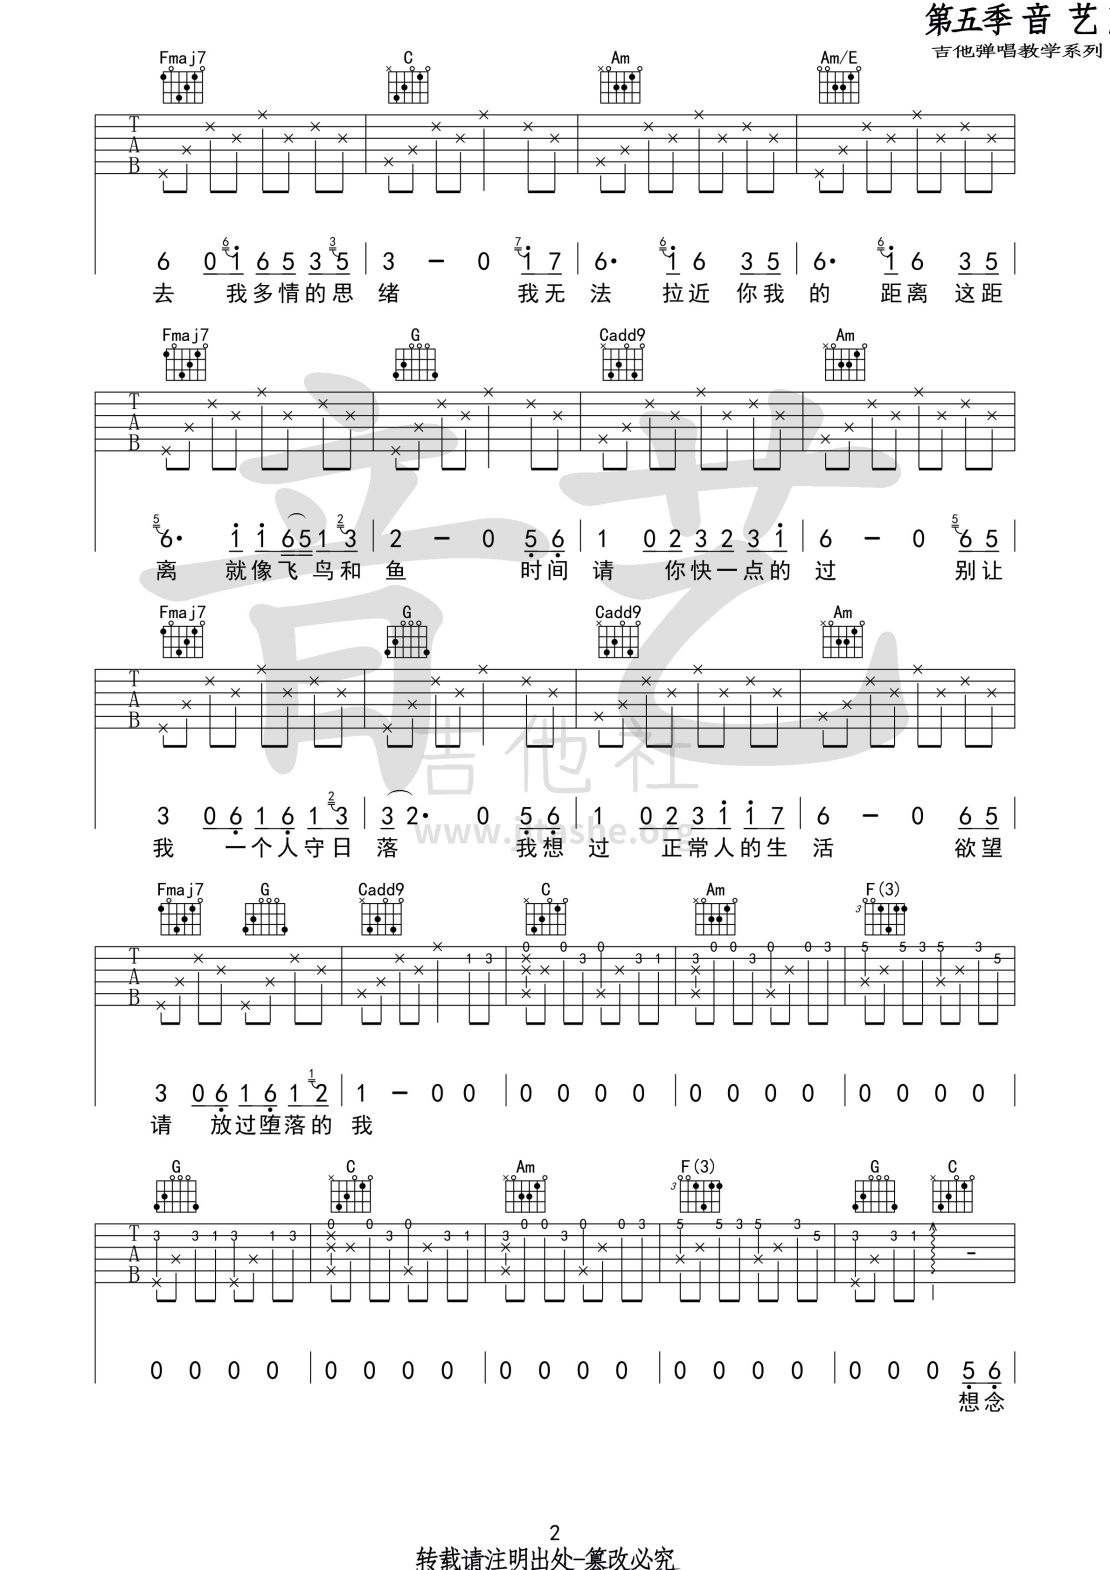 八十年代的歌吉他谱(图片谱,弹唱,民谣)_赵雷(雷子)_八十年代的歌2 第五期 第二十集.jpg